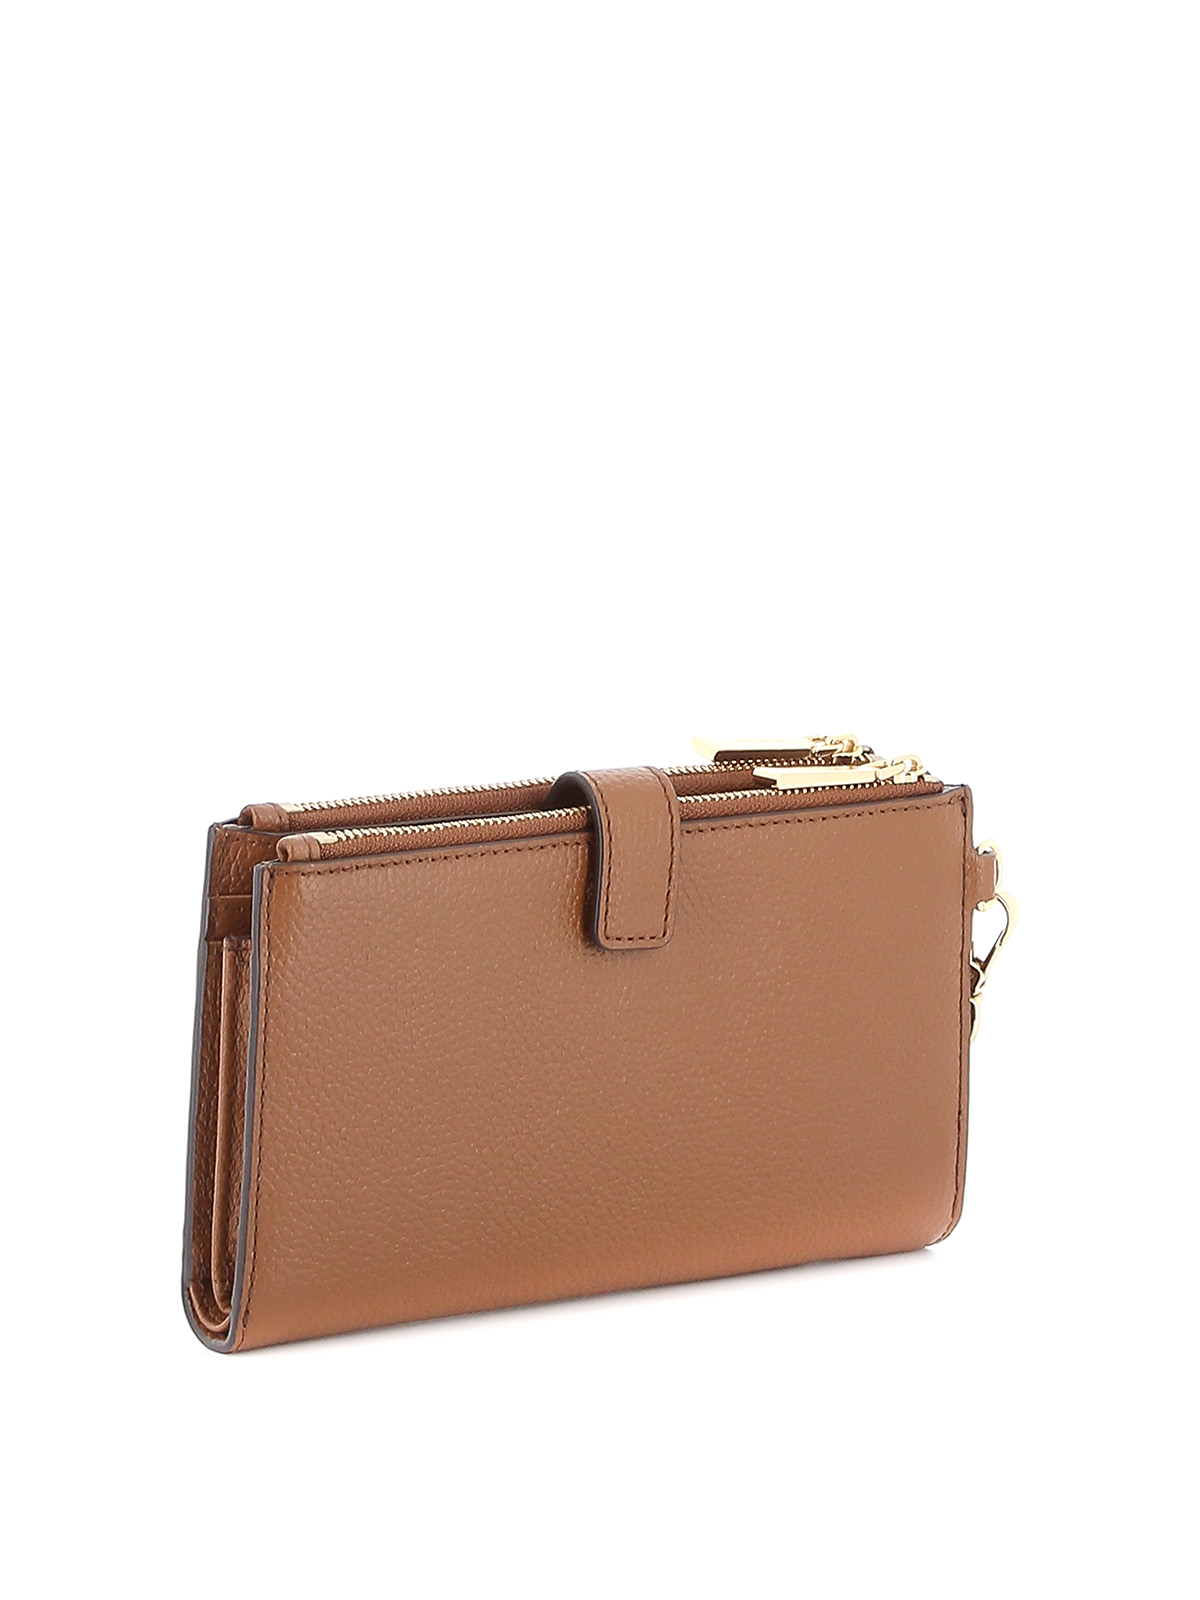 Wallets & purses Michael Kors - Jet Set leather double zip wallet -  34F9GAFW4L230